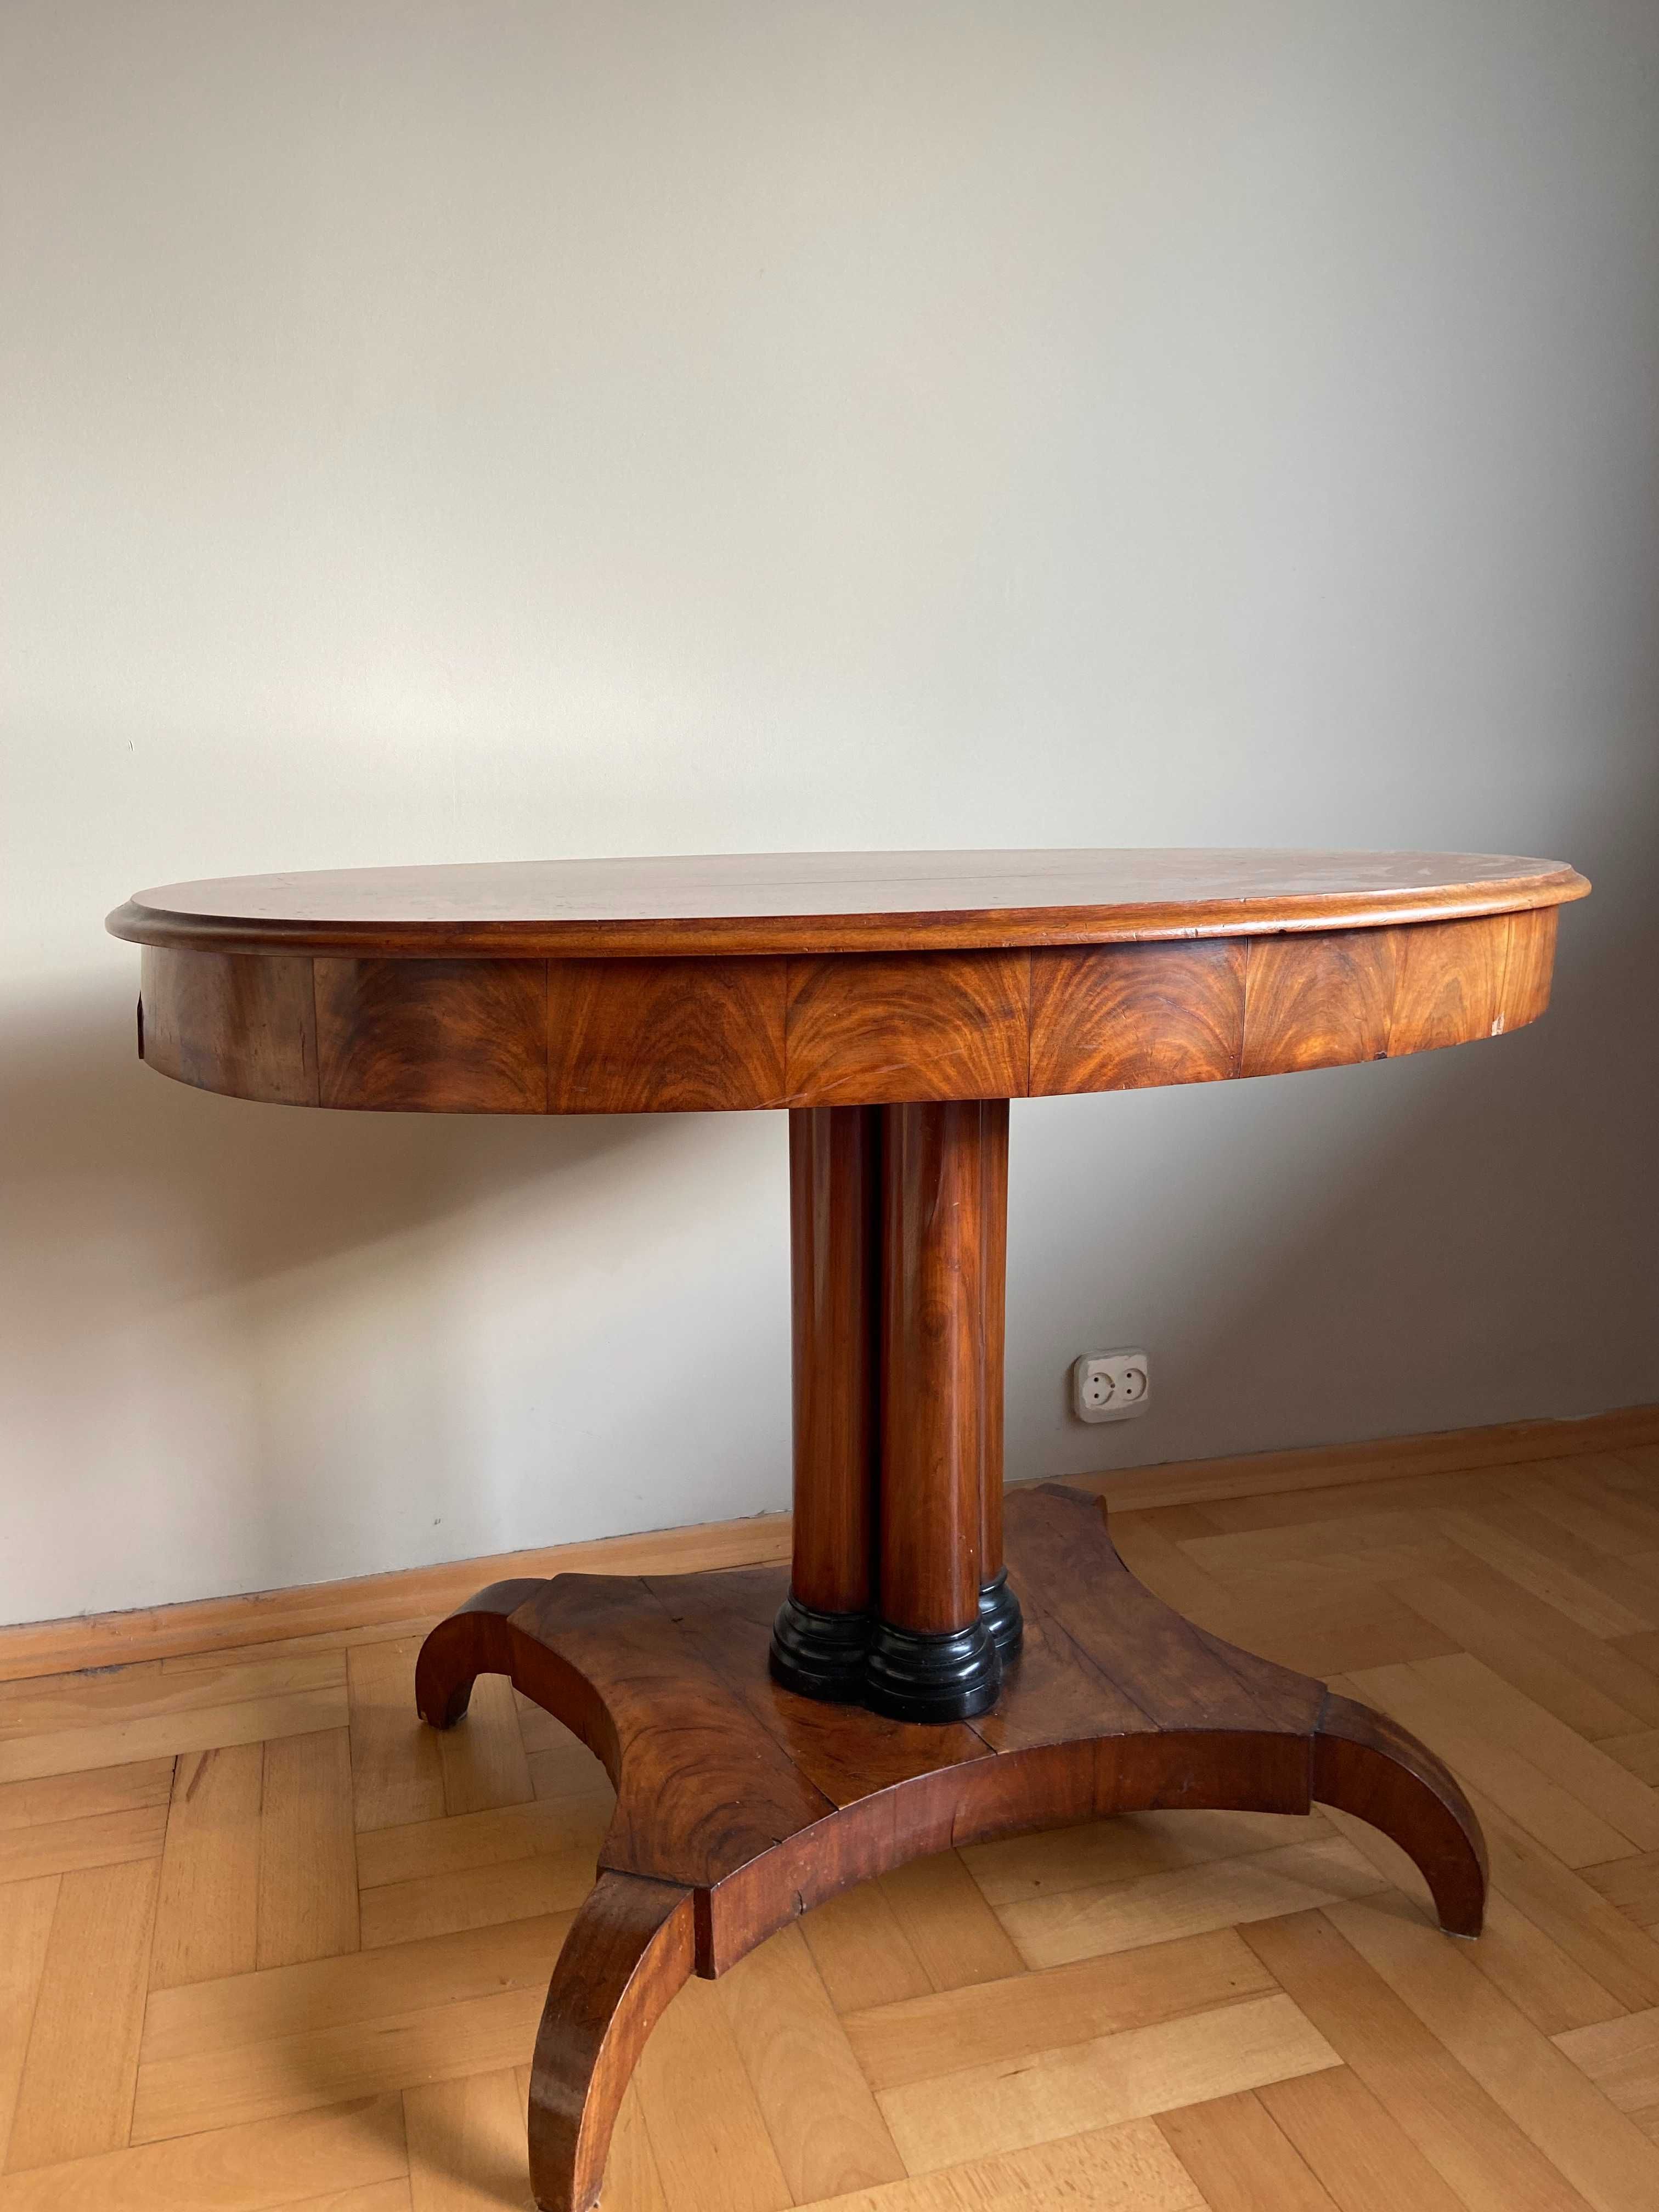 Stół drewniany owalny w typie Biedermeier